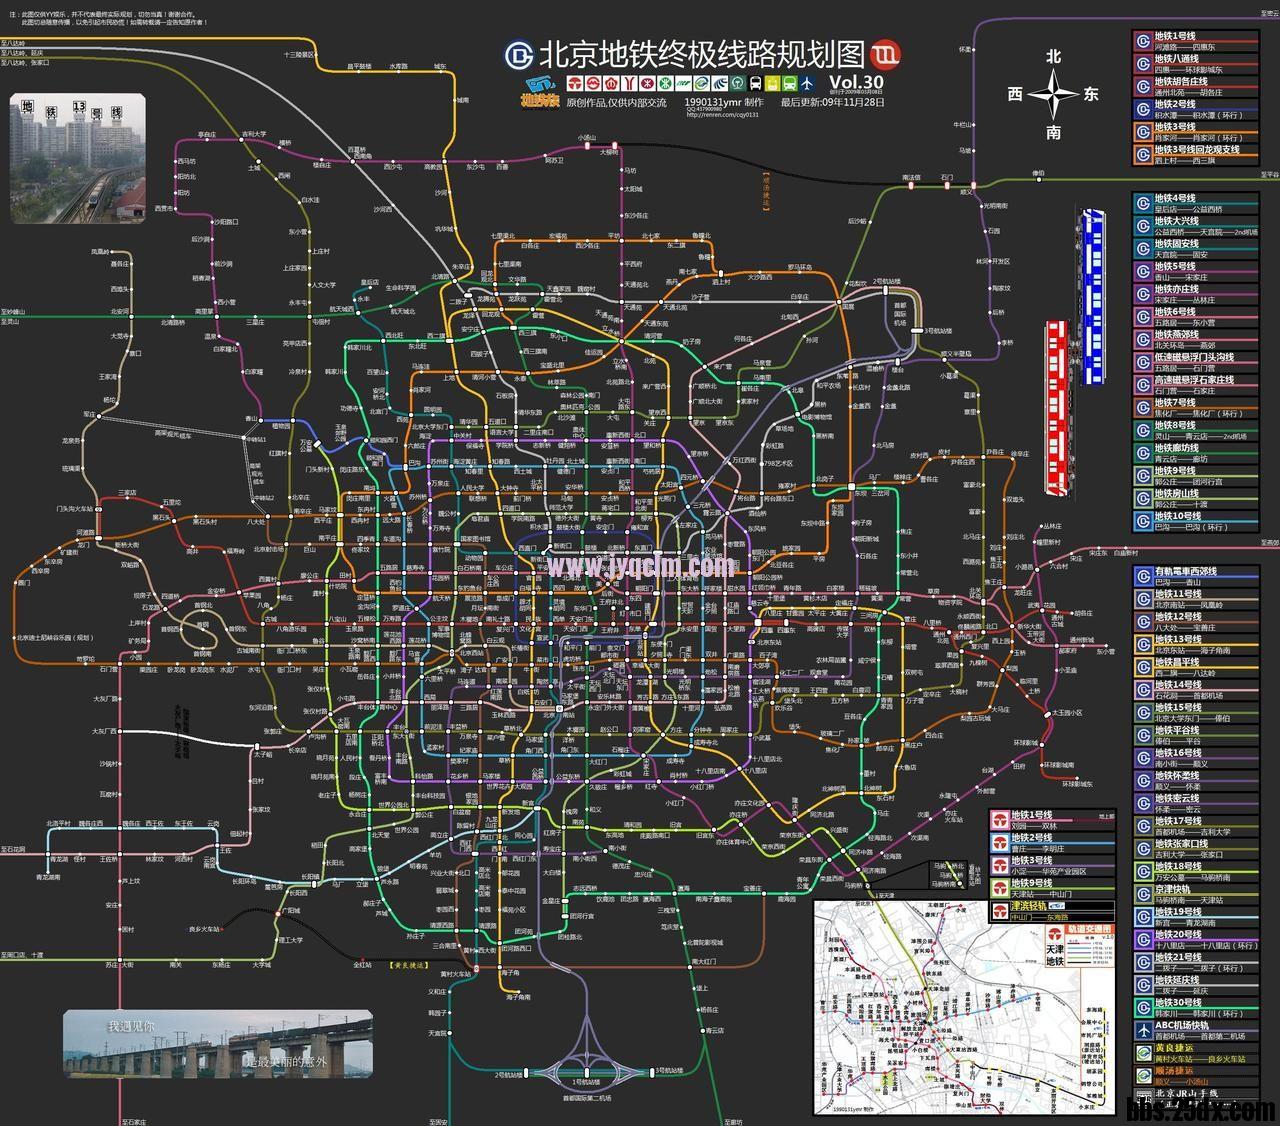 北京地铁未唻超级规划图,巨型呼蜘蛛网络构造